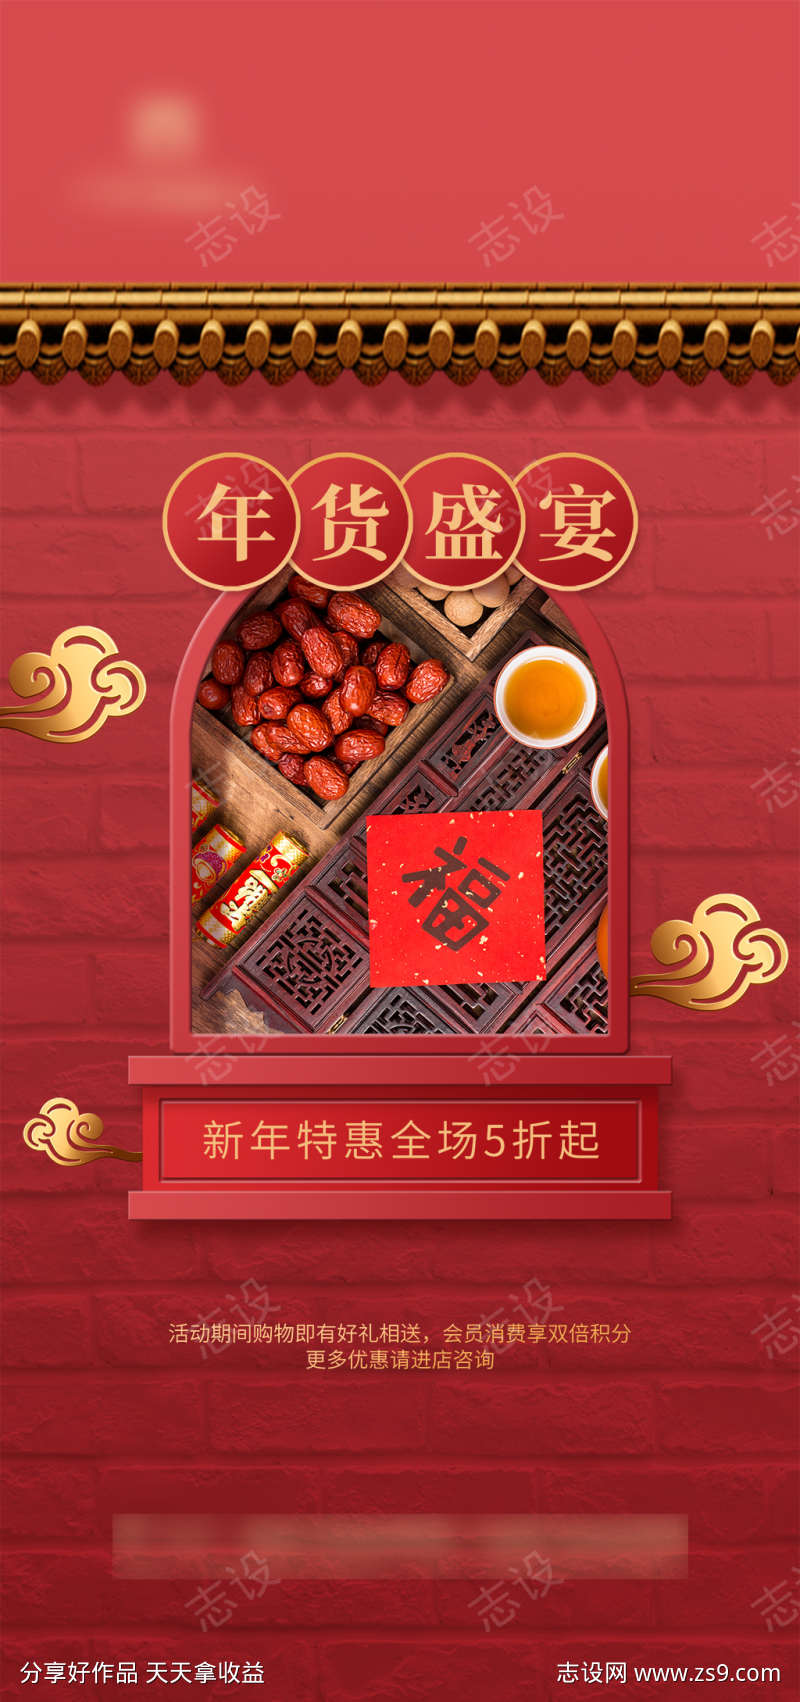 红金新春年货节海报